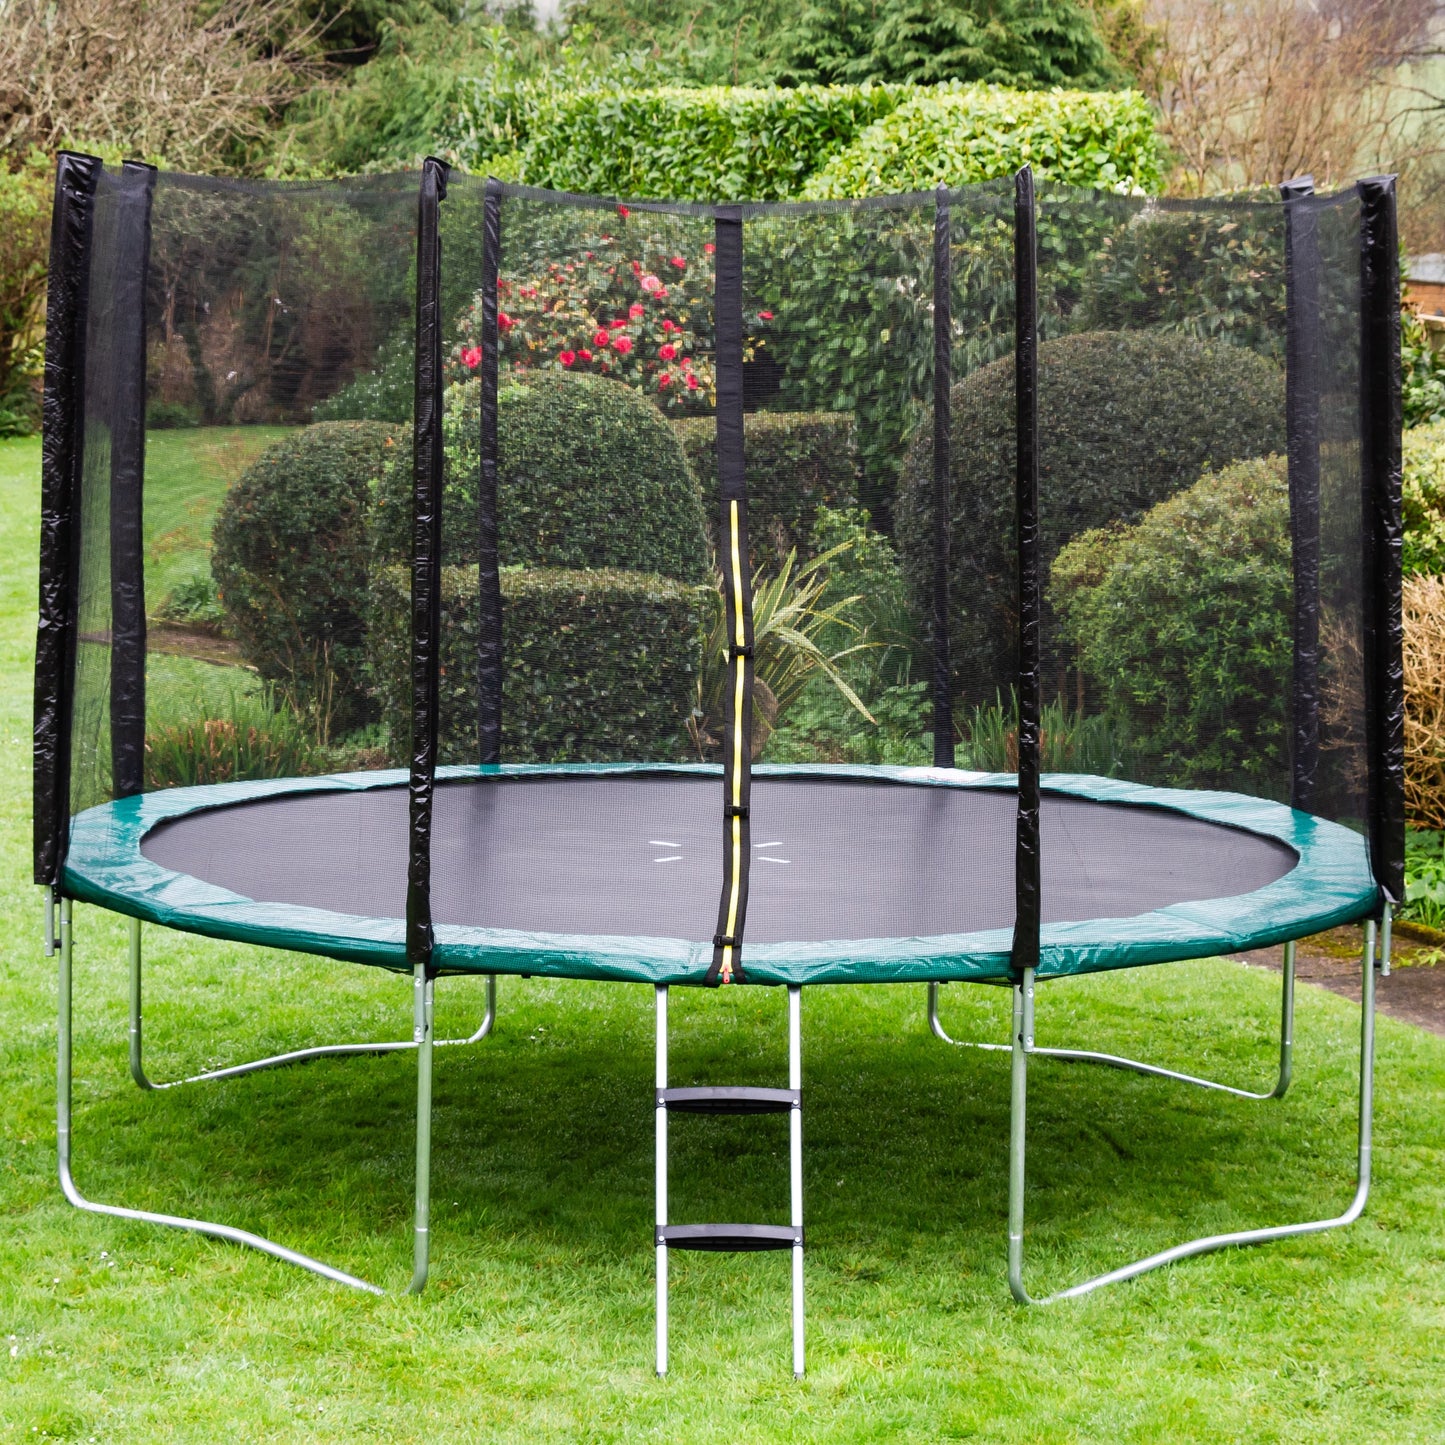 Kanga Hi-Power Green 12ft trampoline package